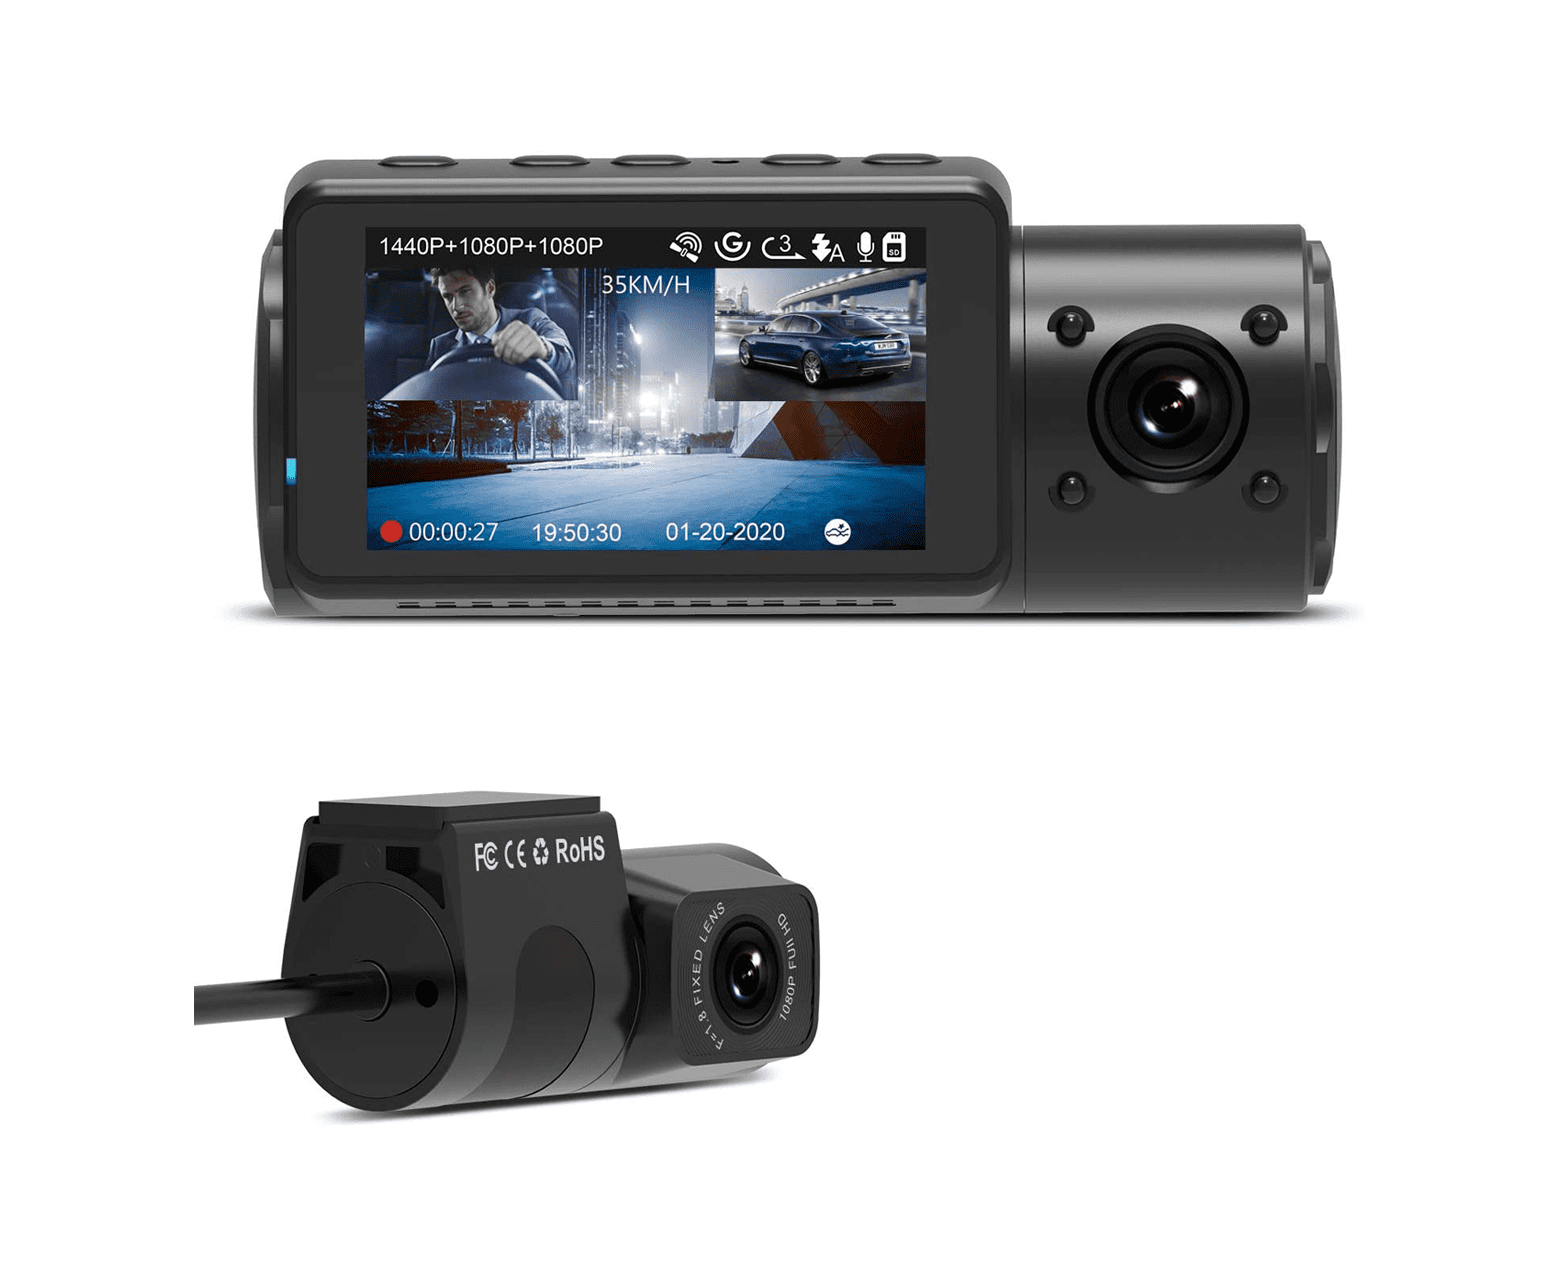 Caméra de tableau de bord Vantrue N4 à 3 canaux 1440p | avec kit de matériel